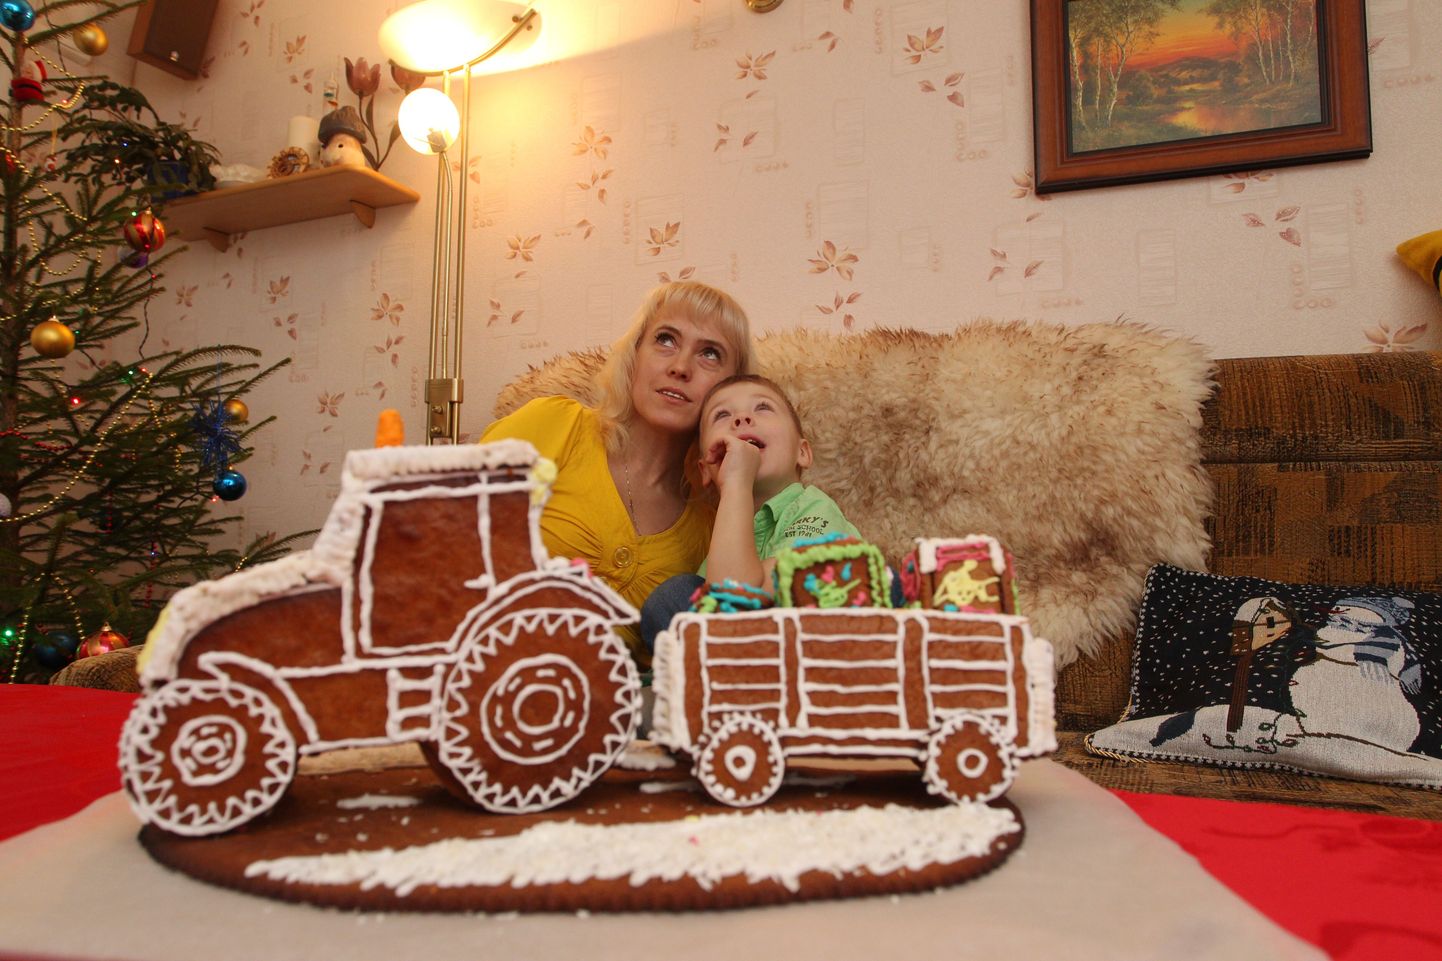 Mulluse piparkoogivõistluse võitis pakikoormaga traktor, mille küpsetasid ja kaunistasid Mait ja Inga Hanni.